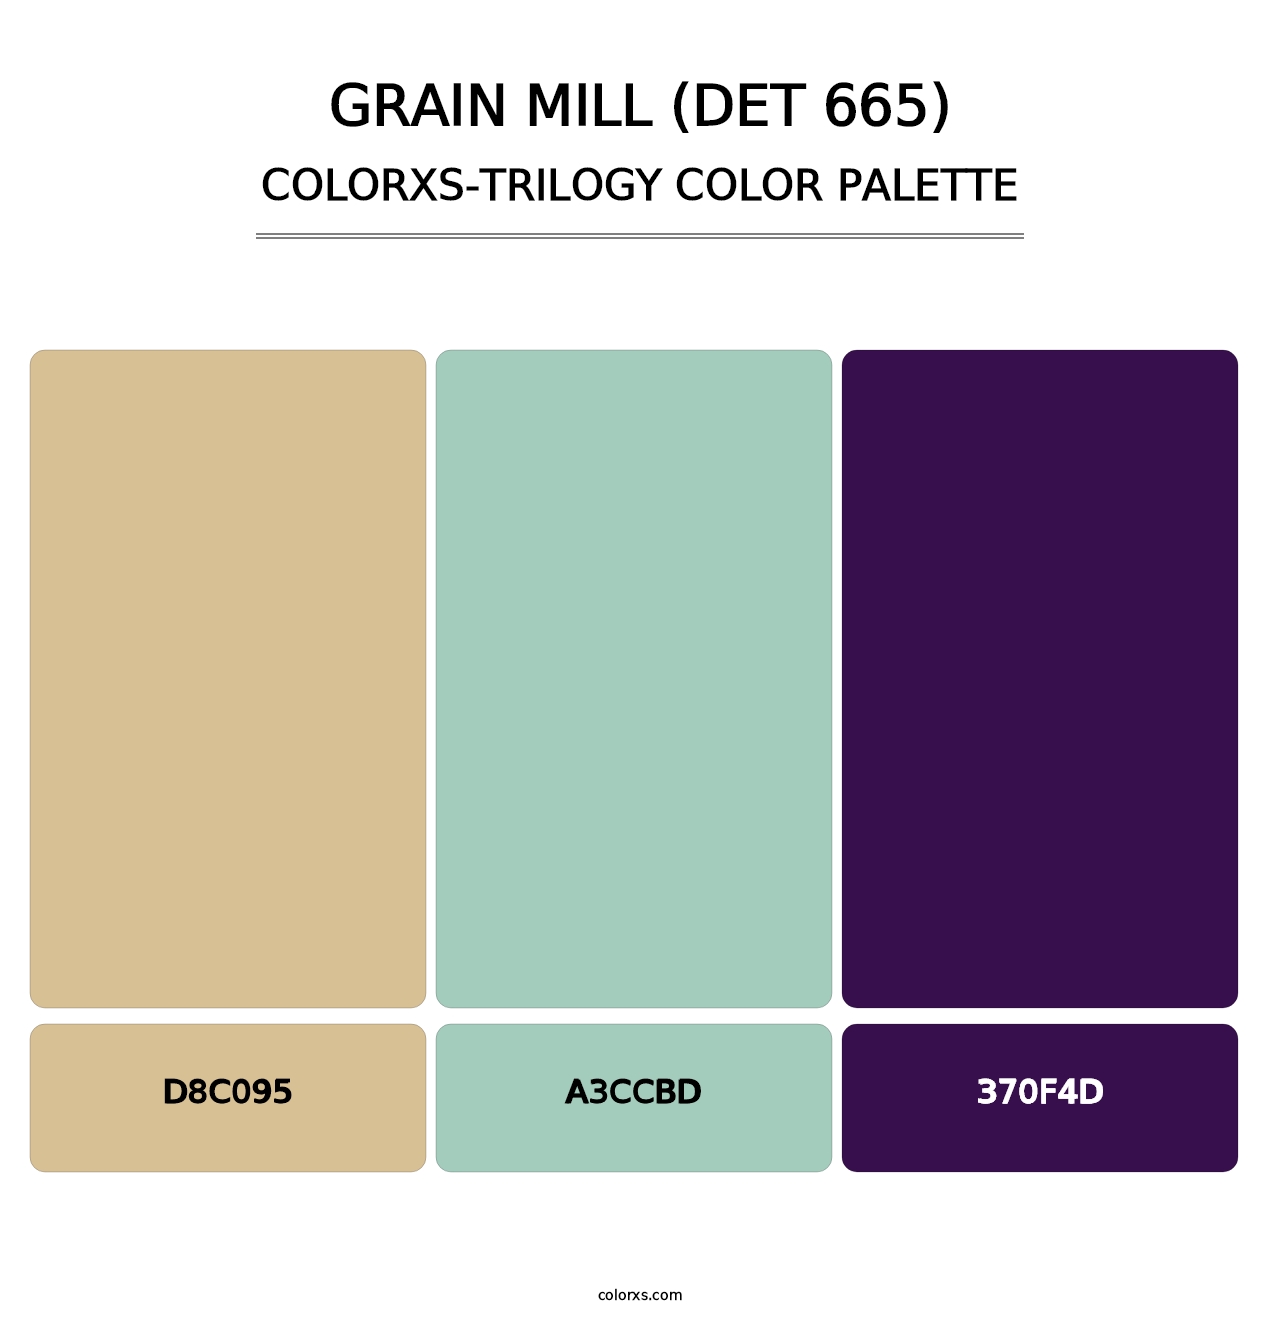 Grain Mill (DET 665) - Colorxs Trilogy Palette